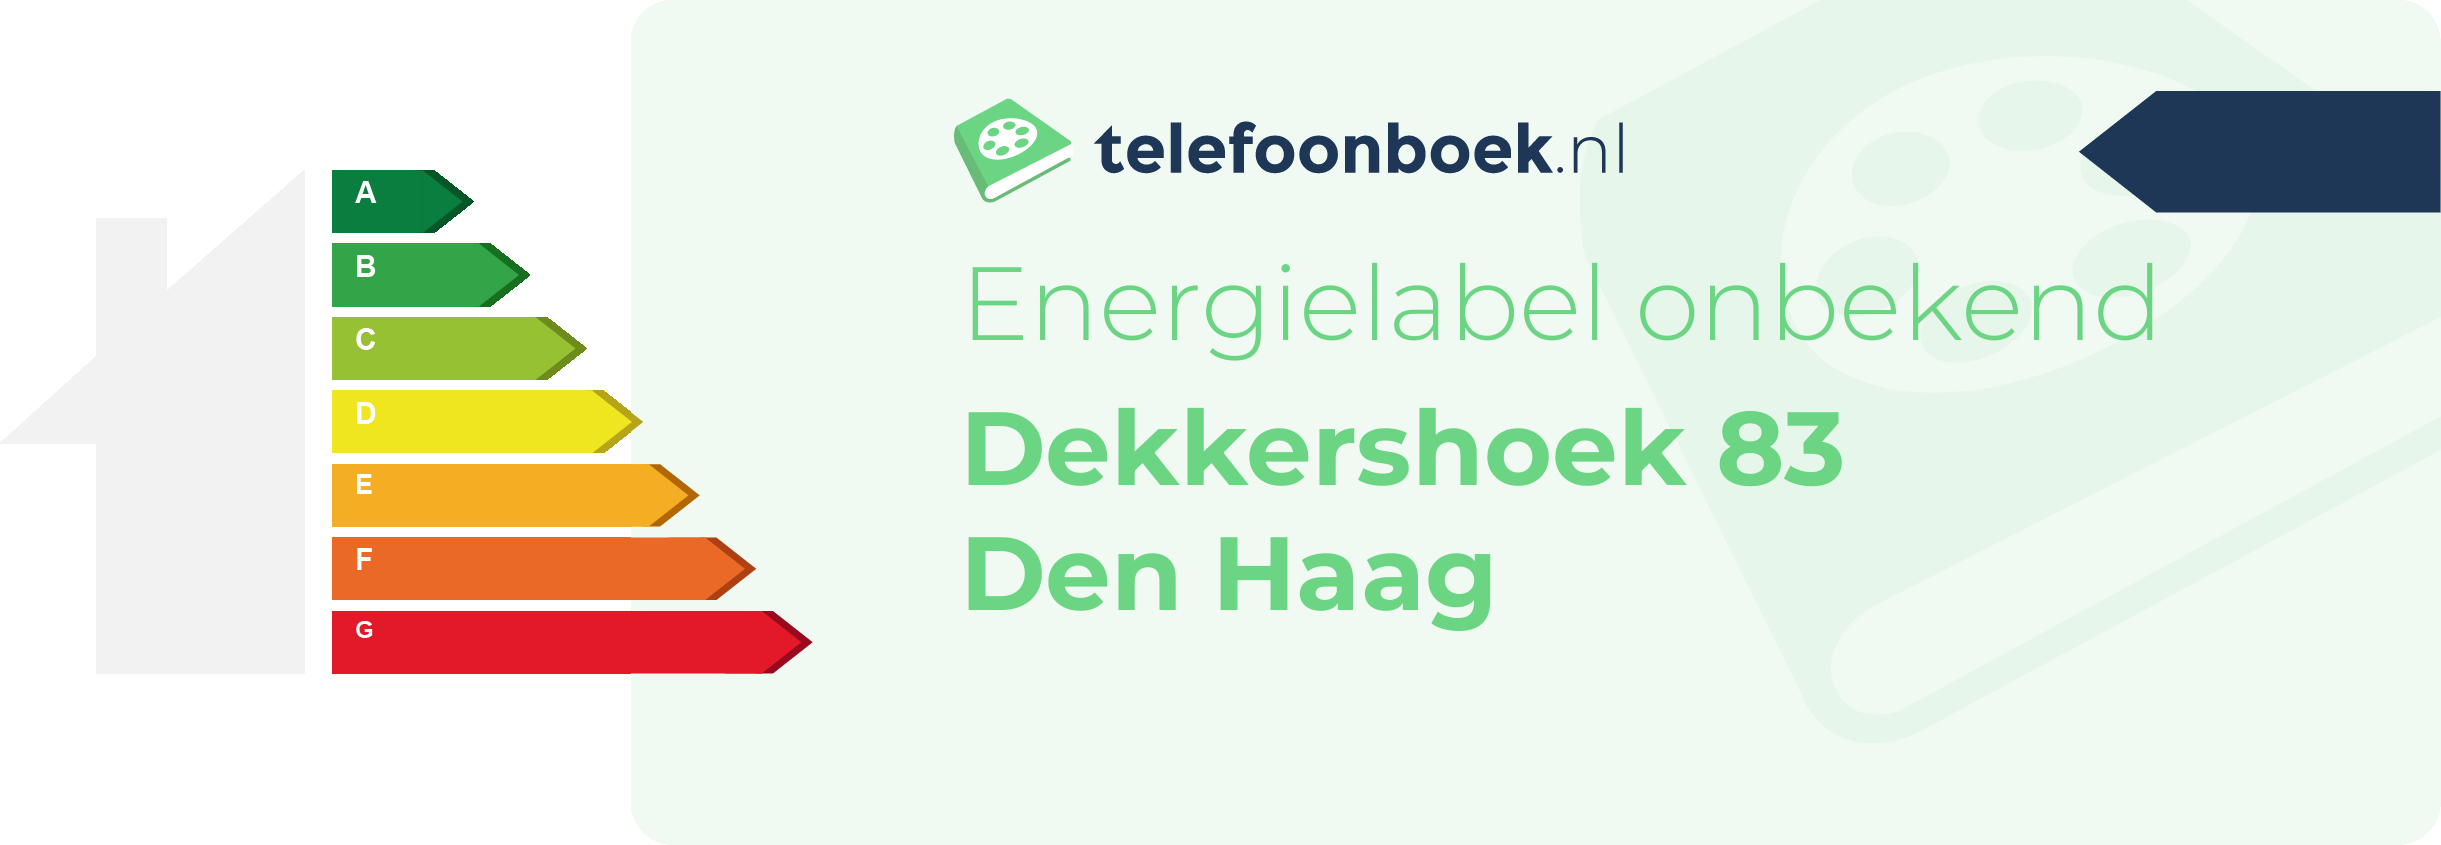 Energielabel Dekkershoek 83 Den Haag